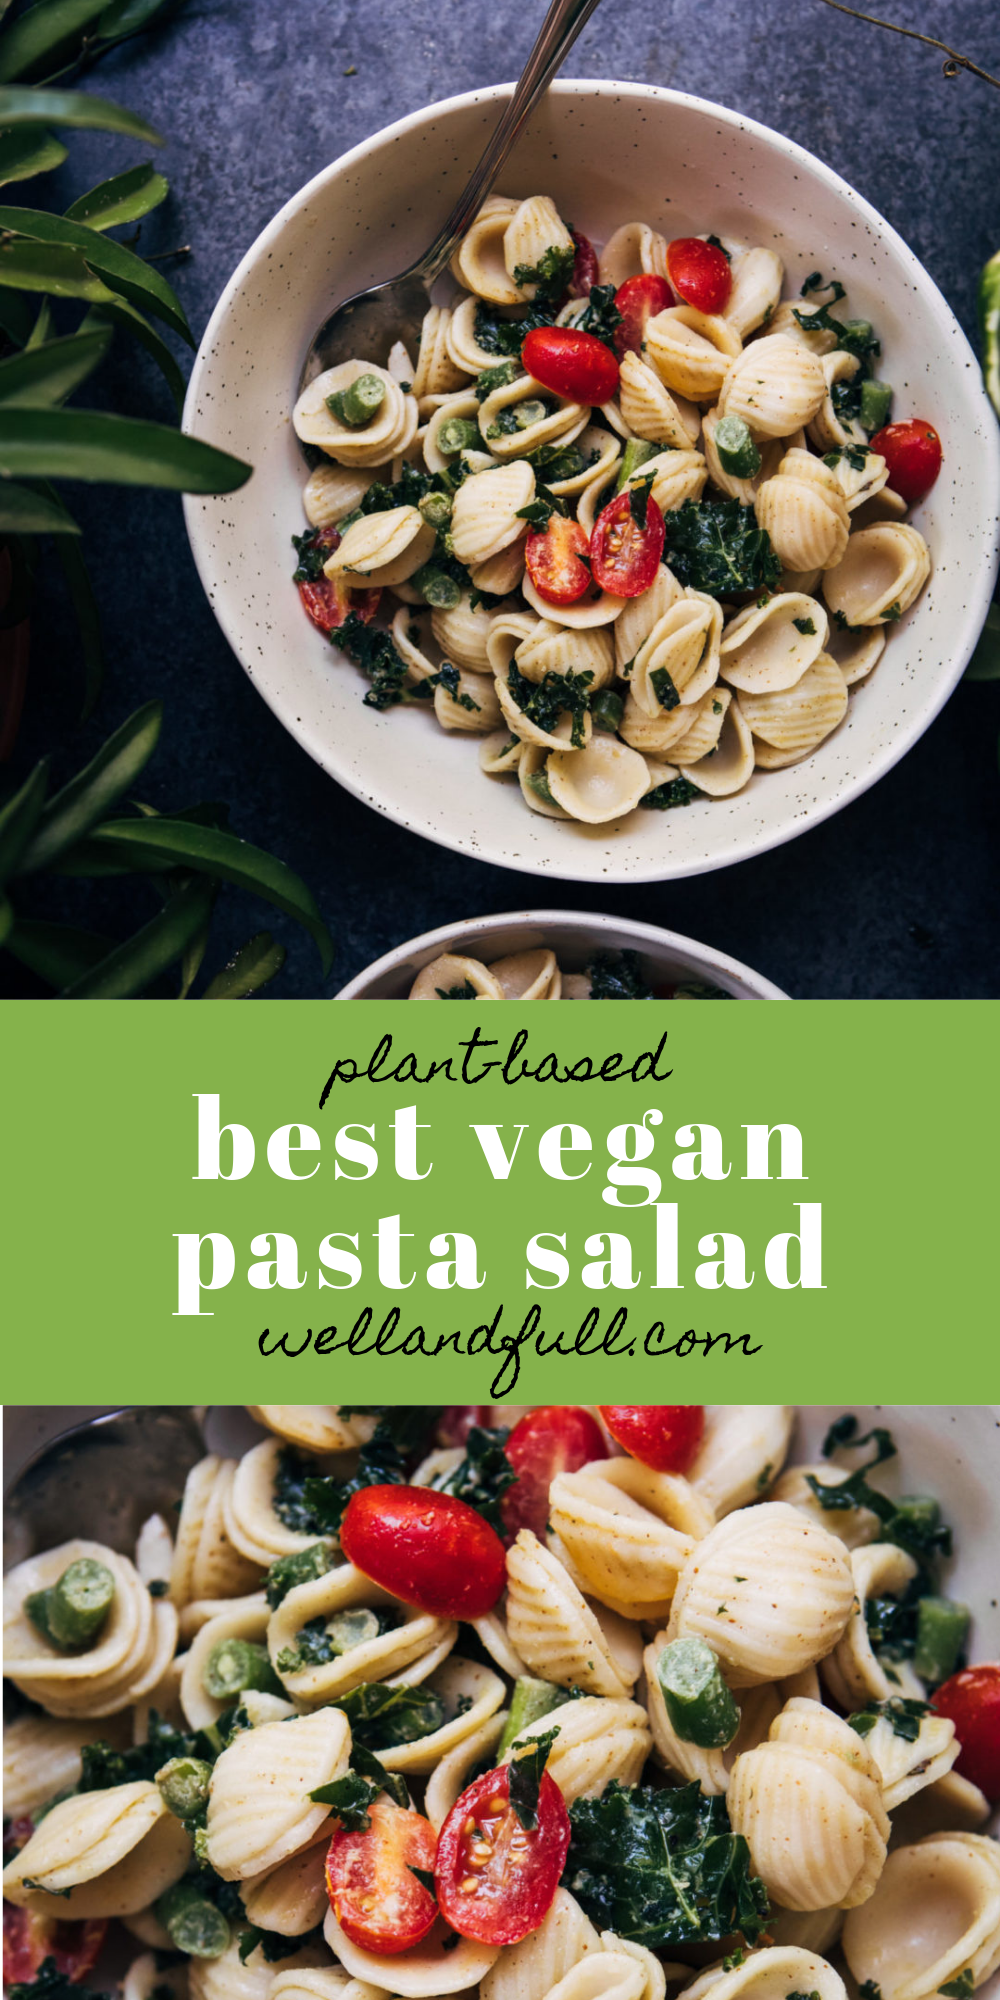 The Best Vegan Pasta Salad | Well and Full | #vegan #recipe